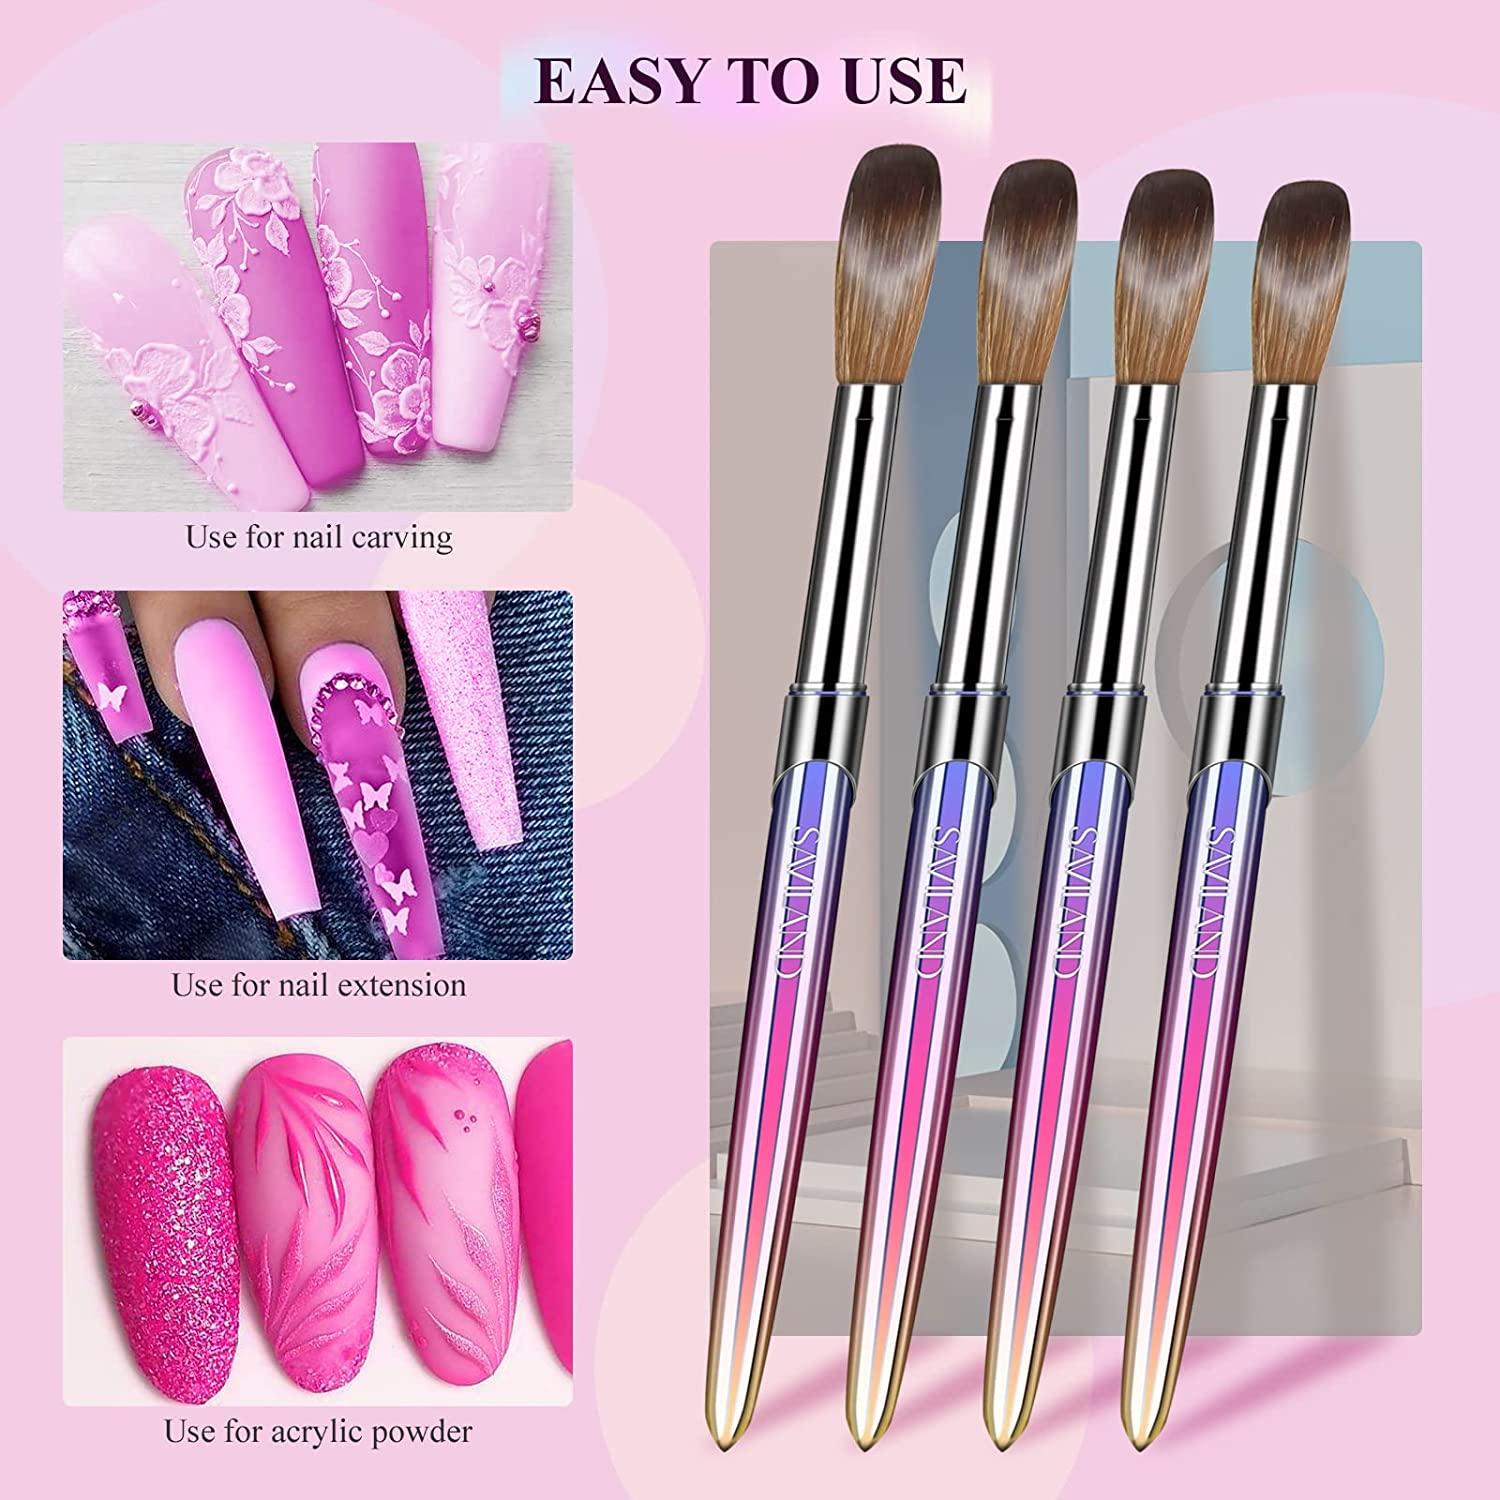 Women's Saviland Acrylic Nail Brush Set - 4pcs Acrylic Nail Brushes for Acrylic Application, Matte Handle Professional Size 4/8/12/16 Acrylic Brushes